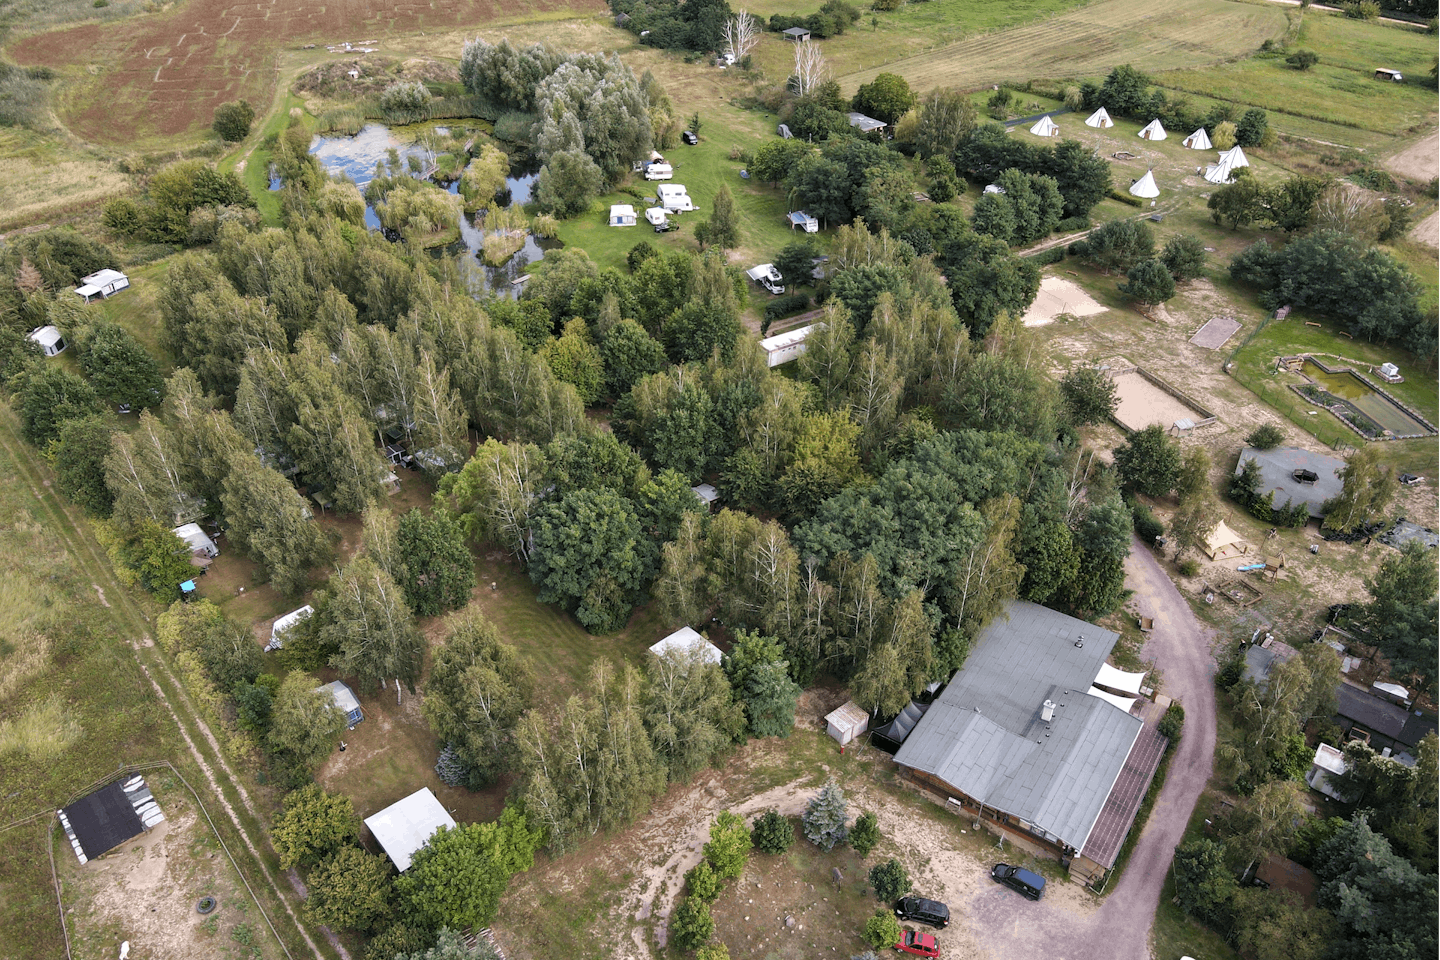 Campingplatz Bertingen - Luftbild vom Campingplatz